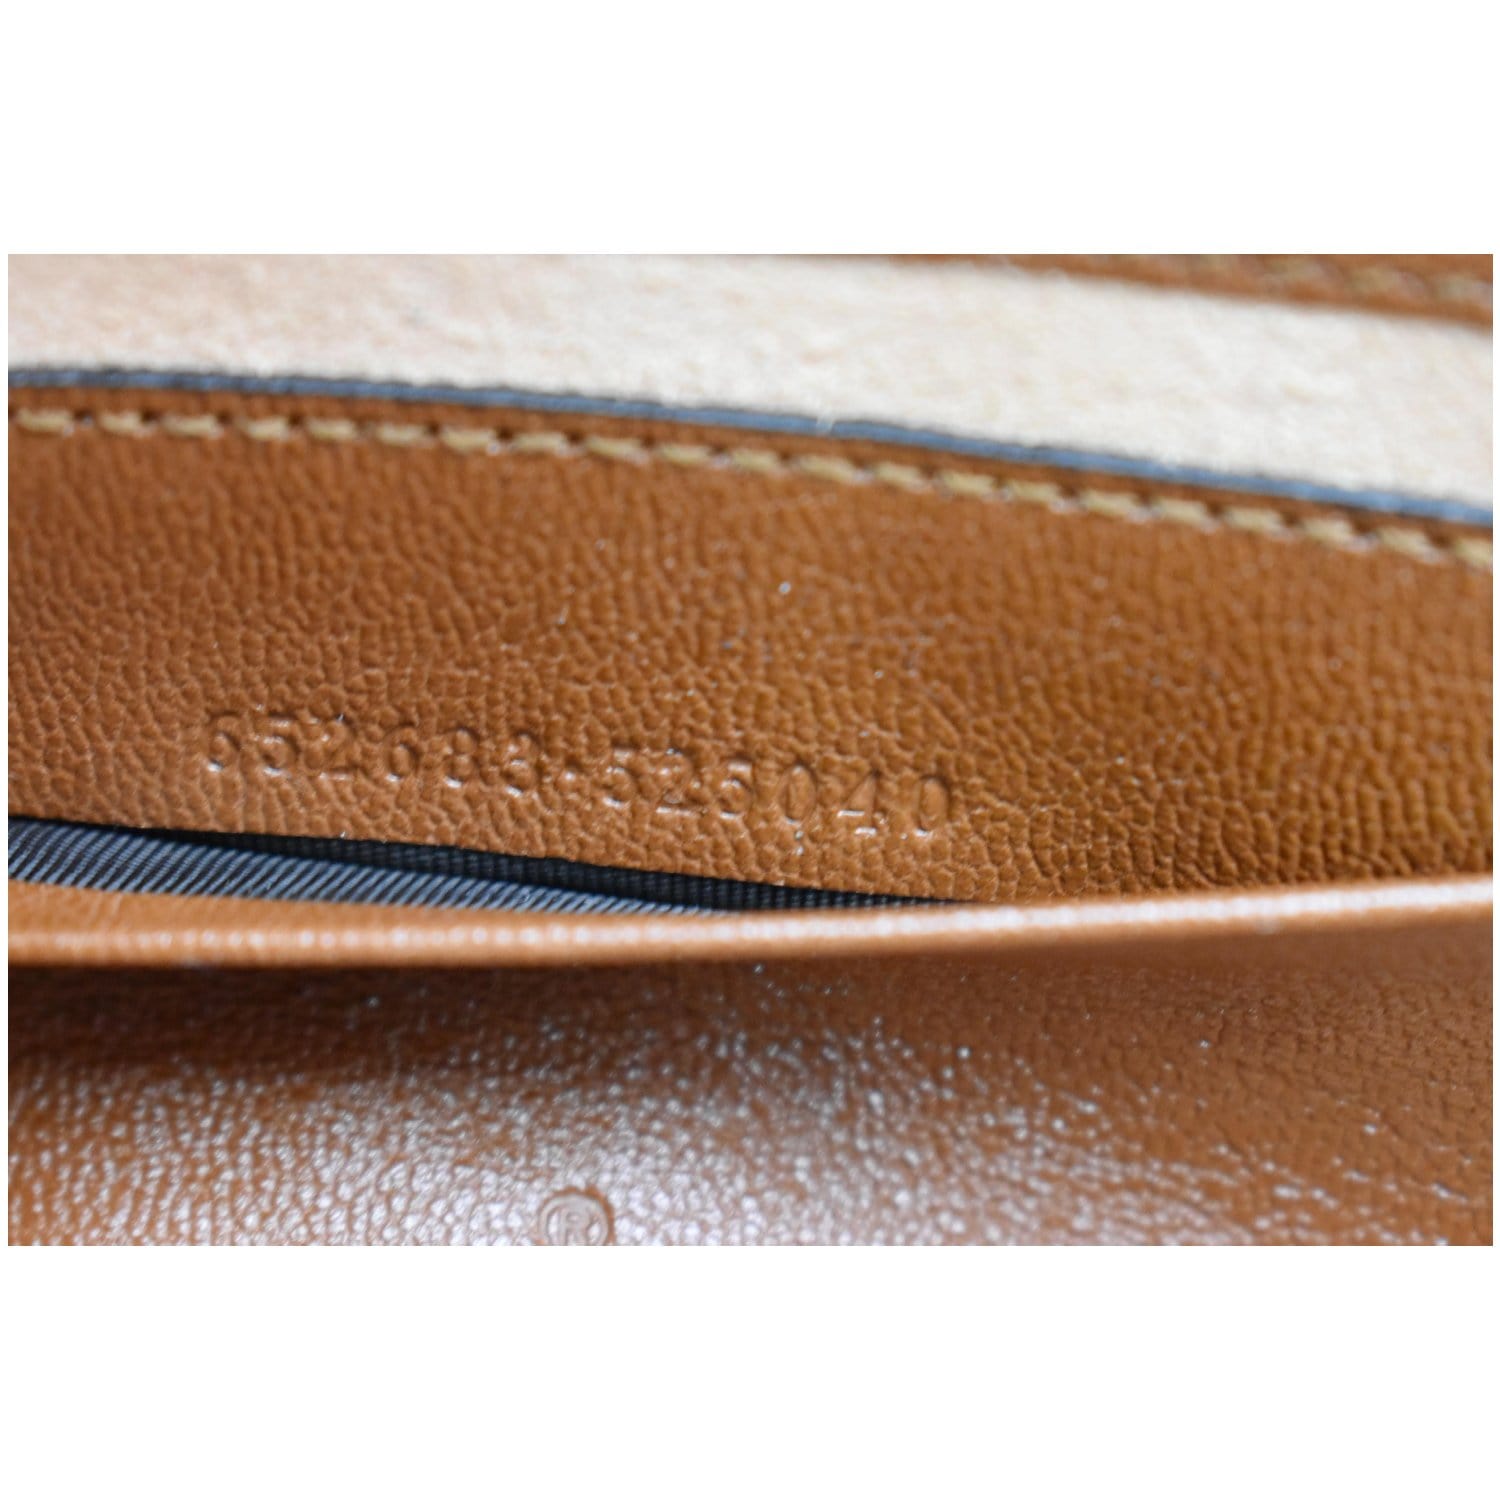 Gucci - Padlock Mini Monogram Brown Top Handle - Crossbody / Shoulder -  BougieHabit